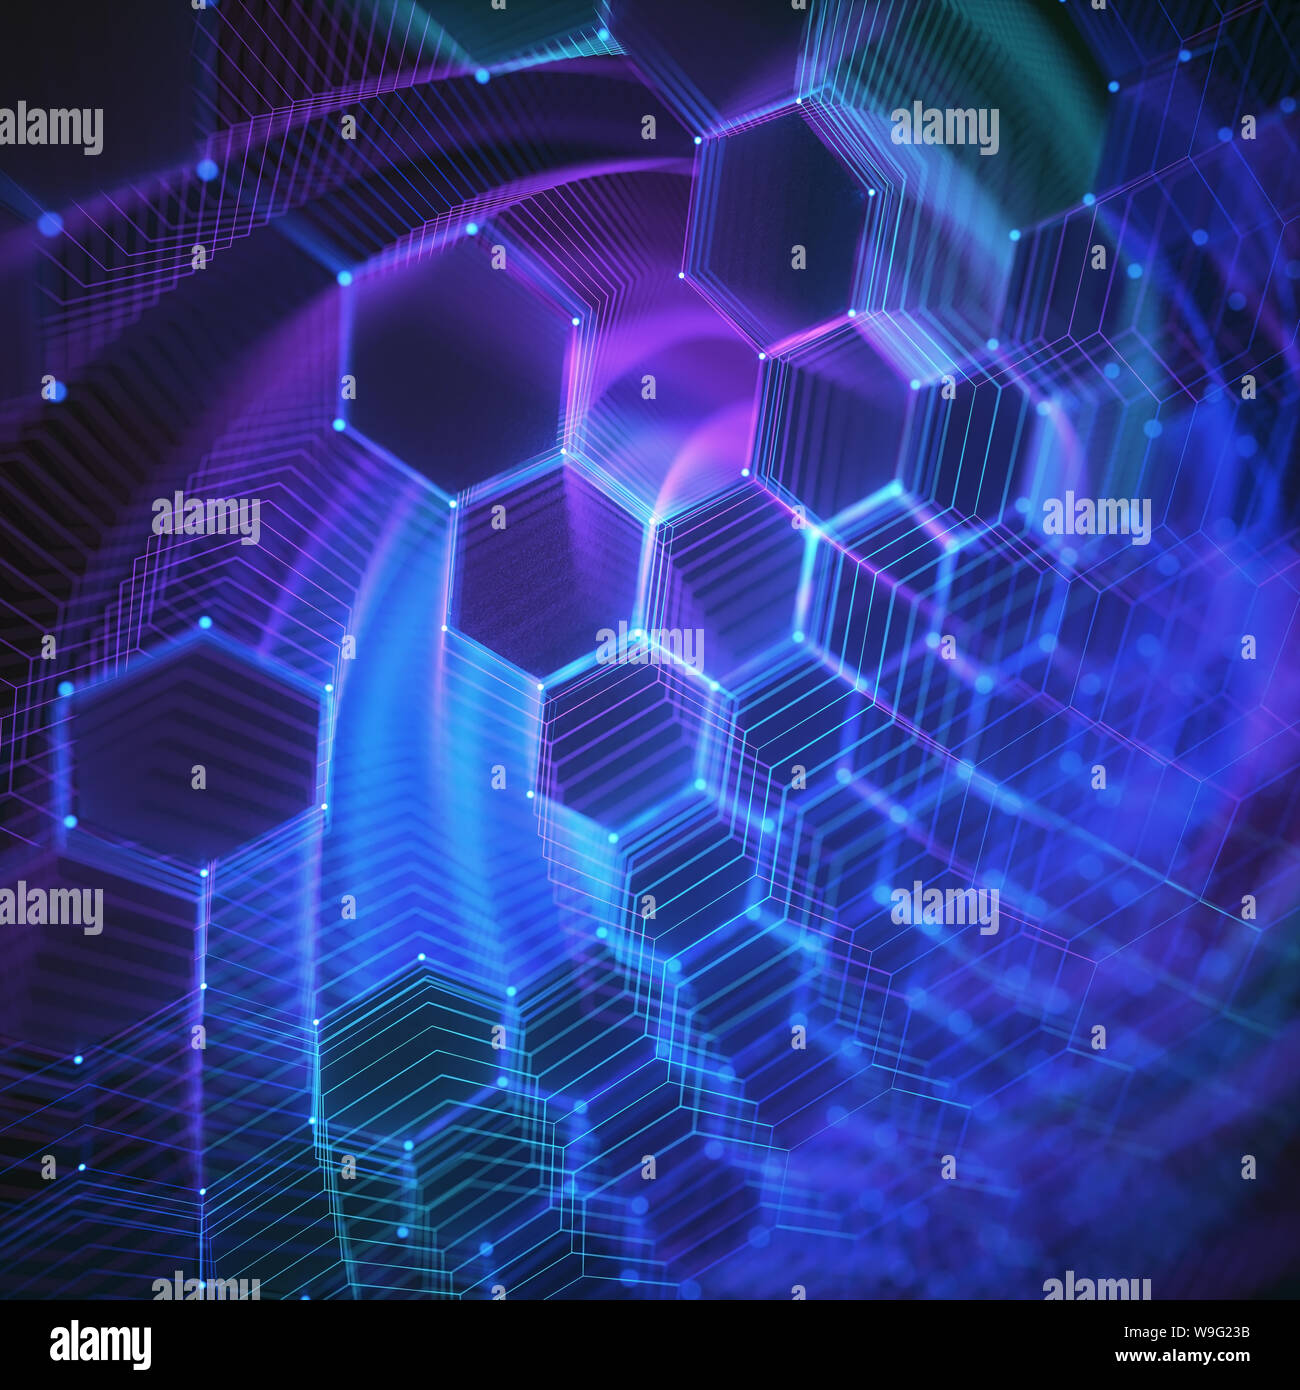 Drei-dimensionalen Gitter aus Linien und Punkten in abstrakter Form in der Technologie Konzept. Bild als Hintergrund zu verwenden. Stockfoto